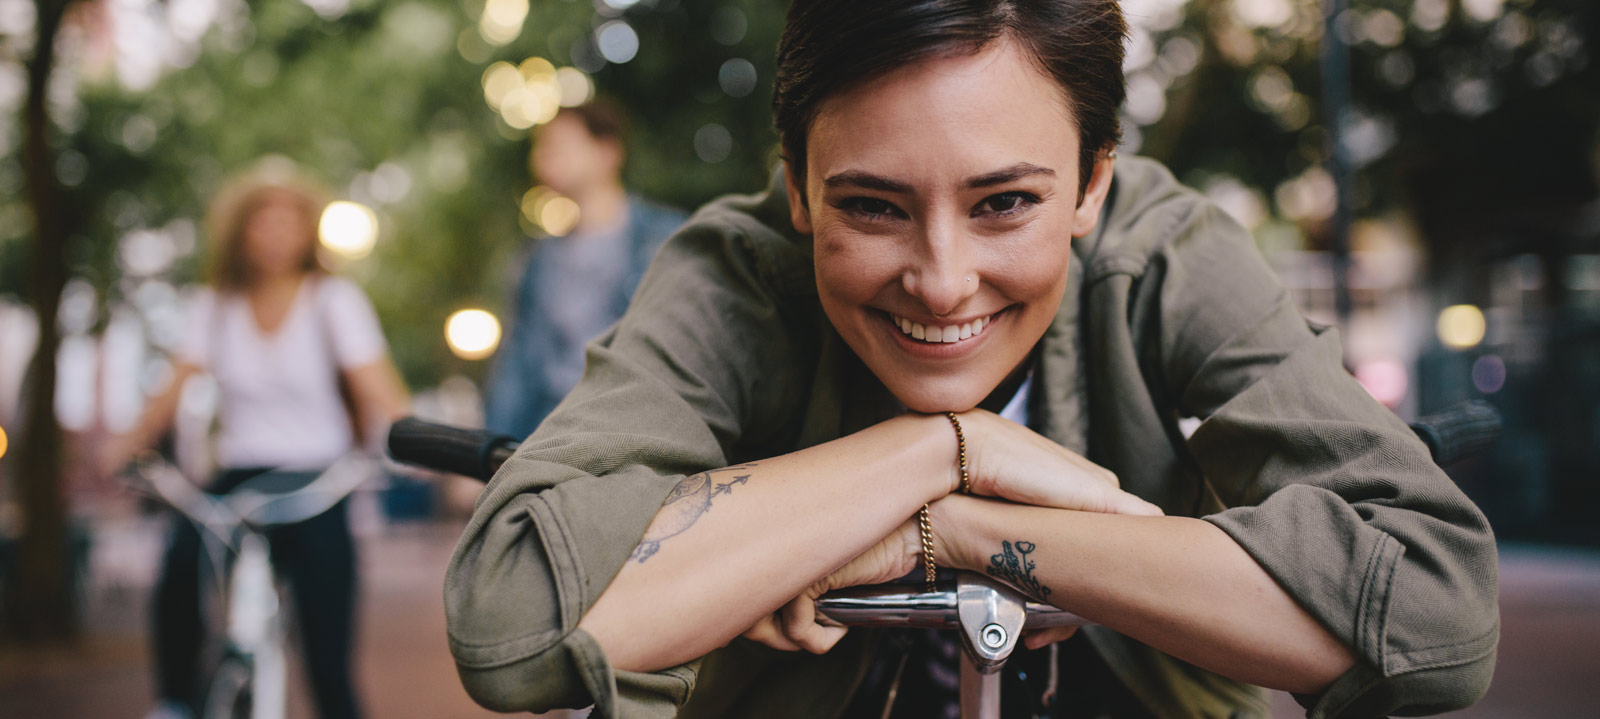 Porträt einer glücklichen Frau, Sie lehnt auf ihrem Fahrrad mit Freunden im Hintergrund. Alle genießen einen Tag in der Stadt mit ihrem Fahrrad.